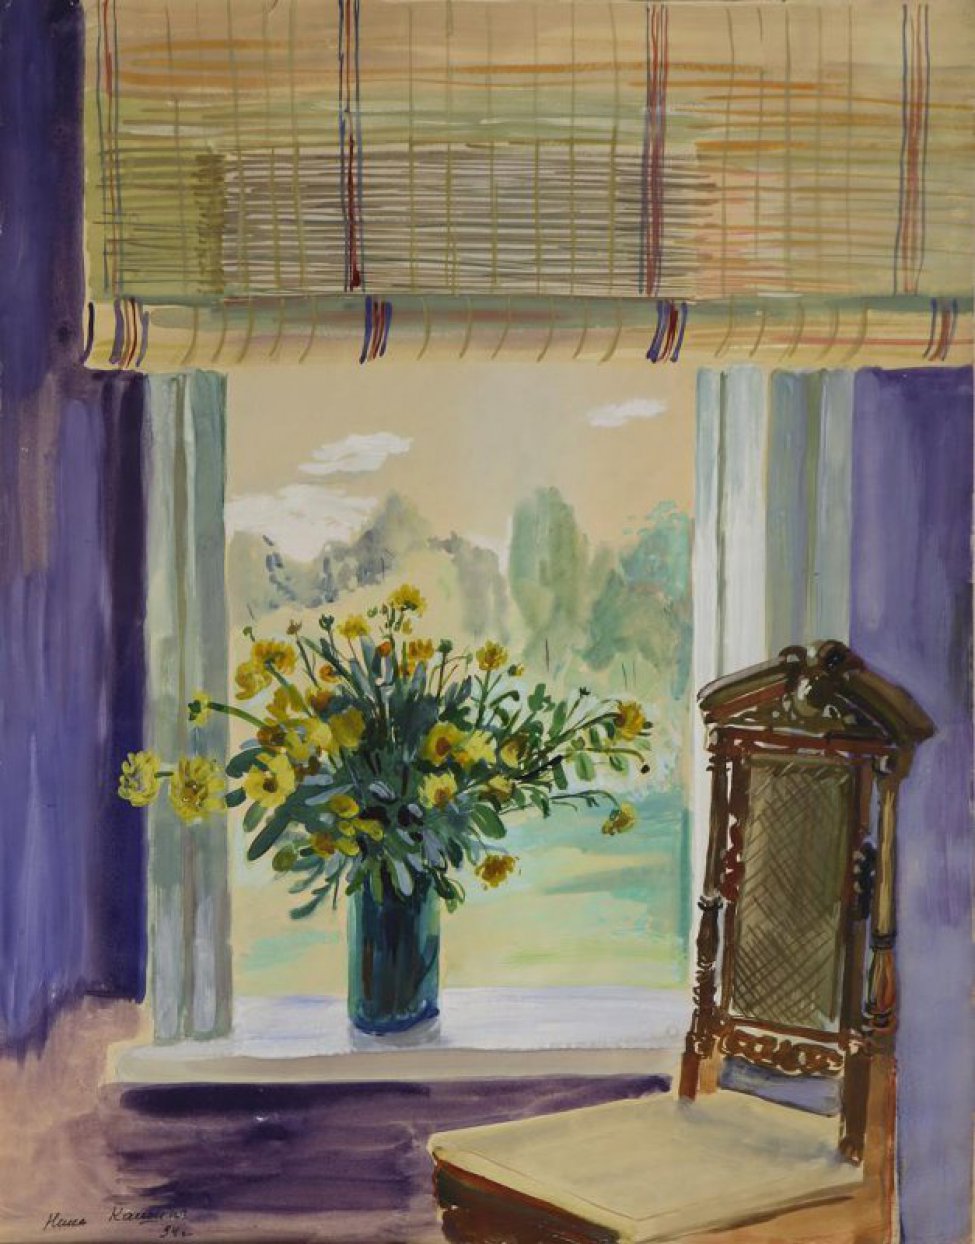 Изображен букет желтых цветов в стеклянном сосуде на подоконнике. Над окном полу свернутая тростниковая занавеска, перед окном - стул с высокой плетеной спинкой. За окном виден летний пейзаж с горами.